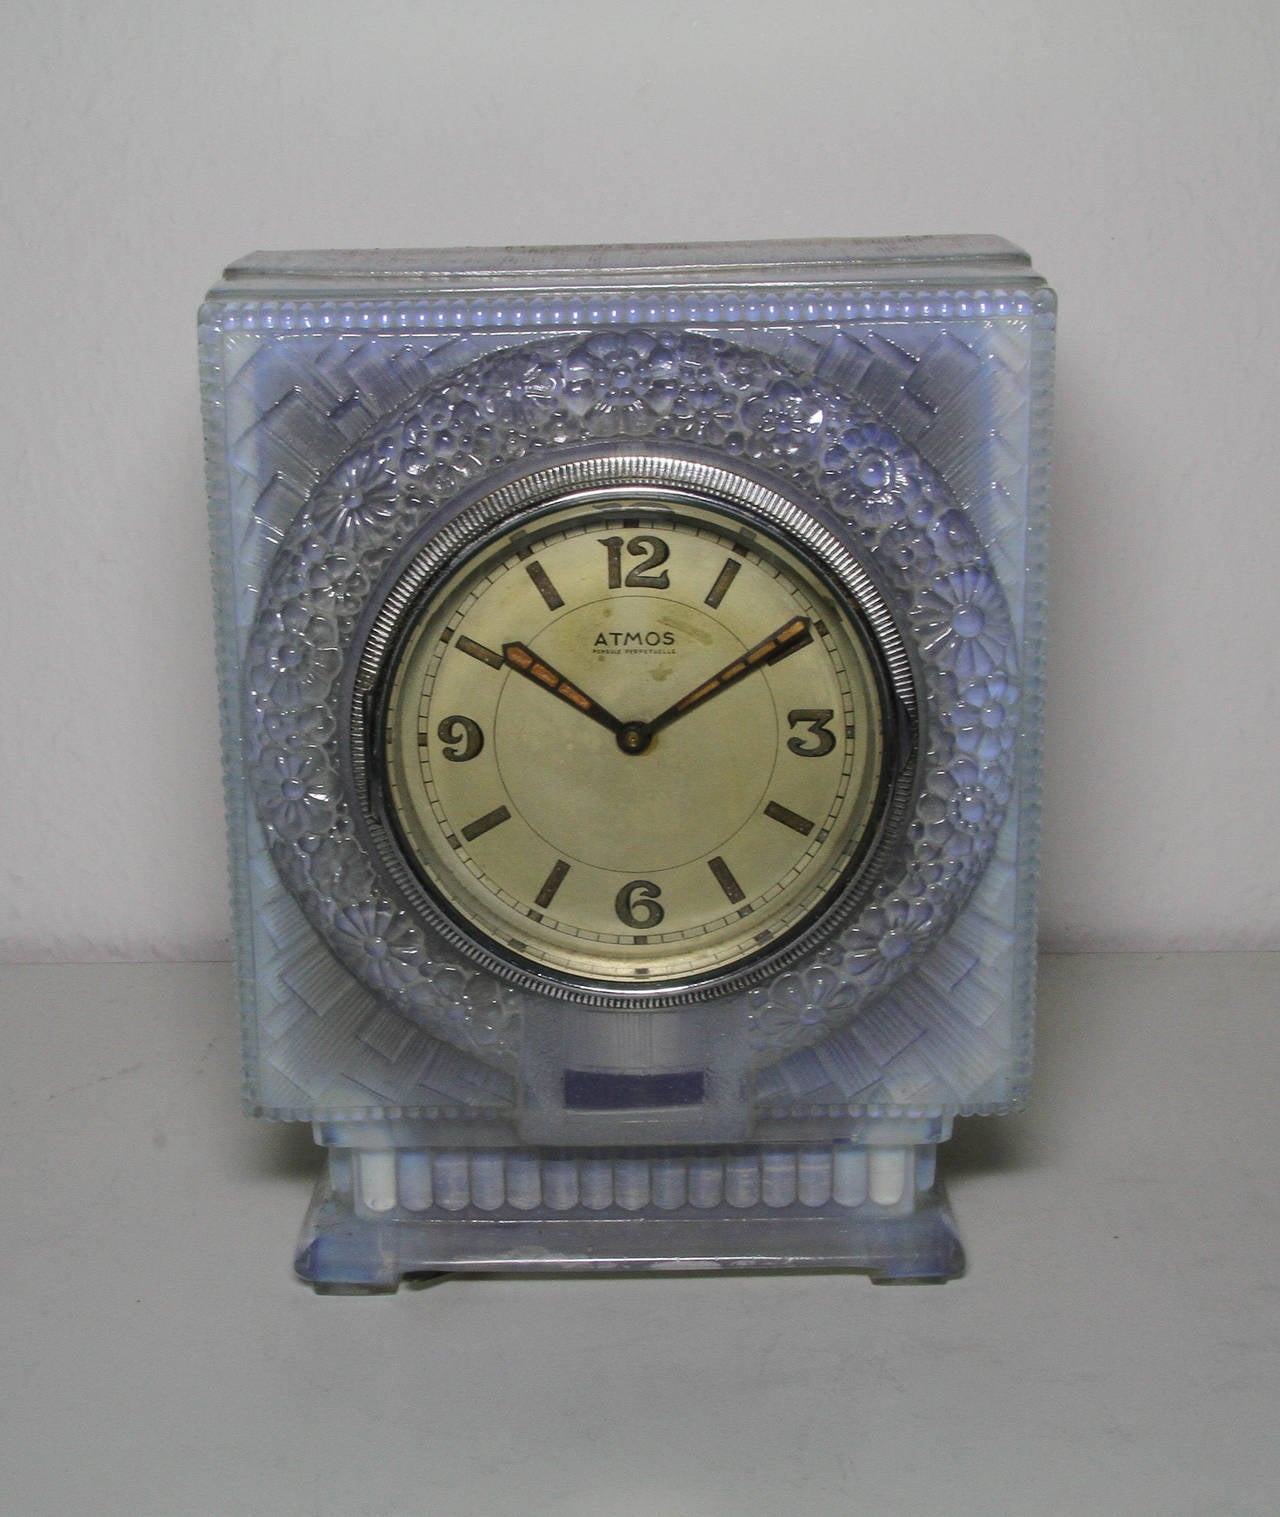 Atmos
Reutter Atmos Pendule Perpetuelle Clock

Art Deco Case

circa 1930